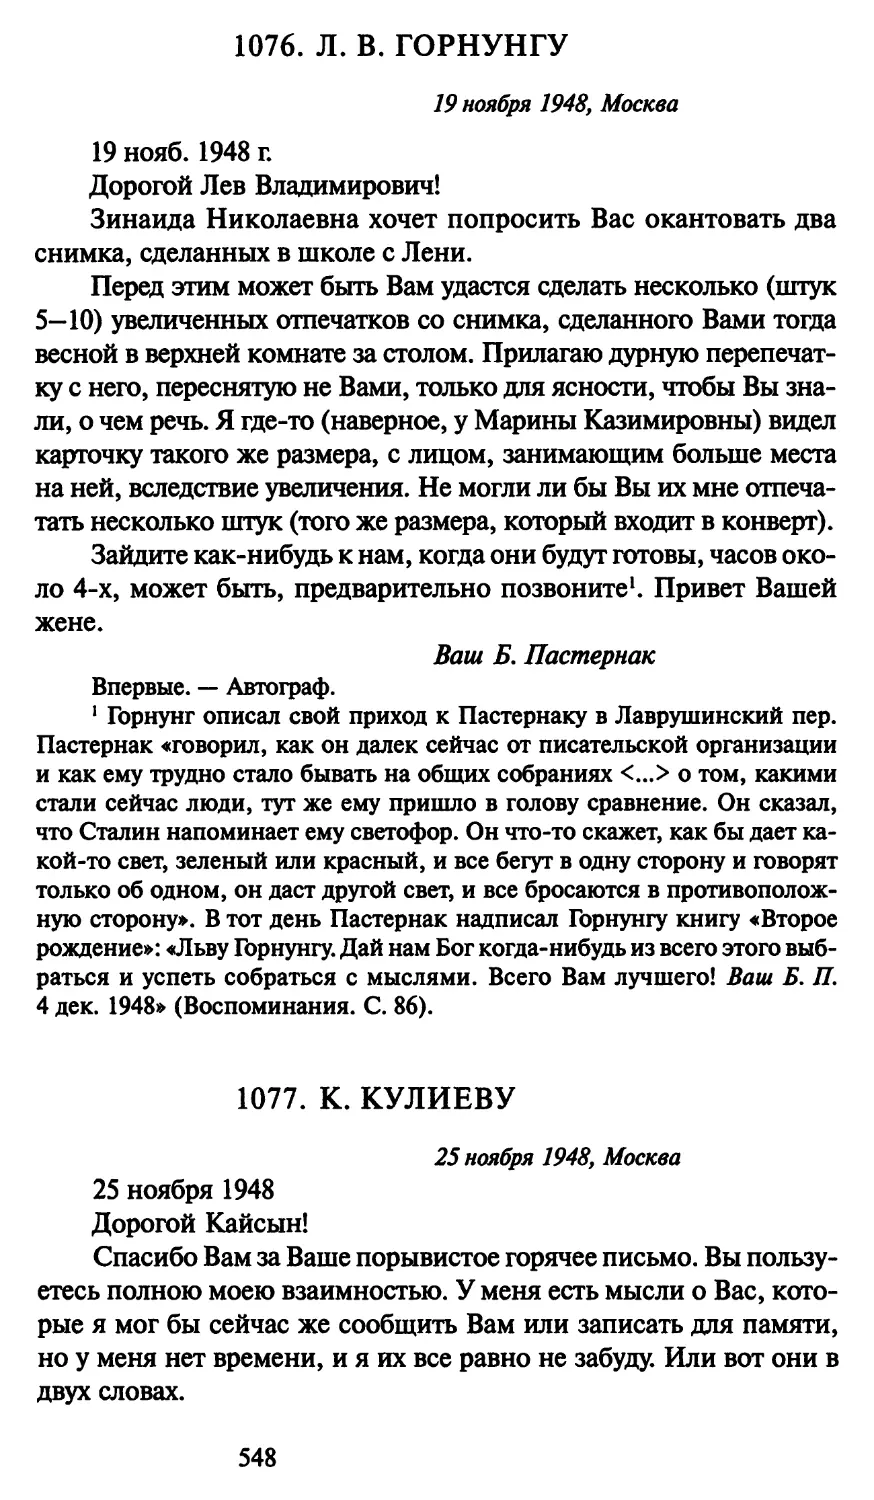 1077. К. Кулиеву 25 ноября 1948